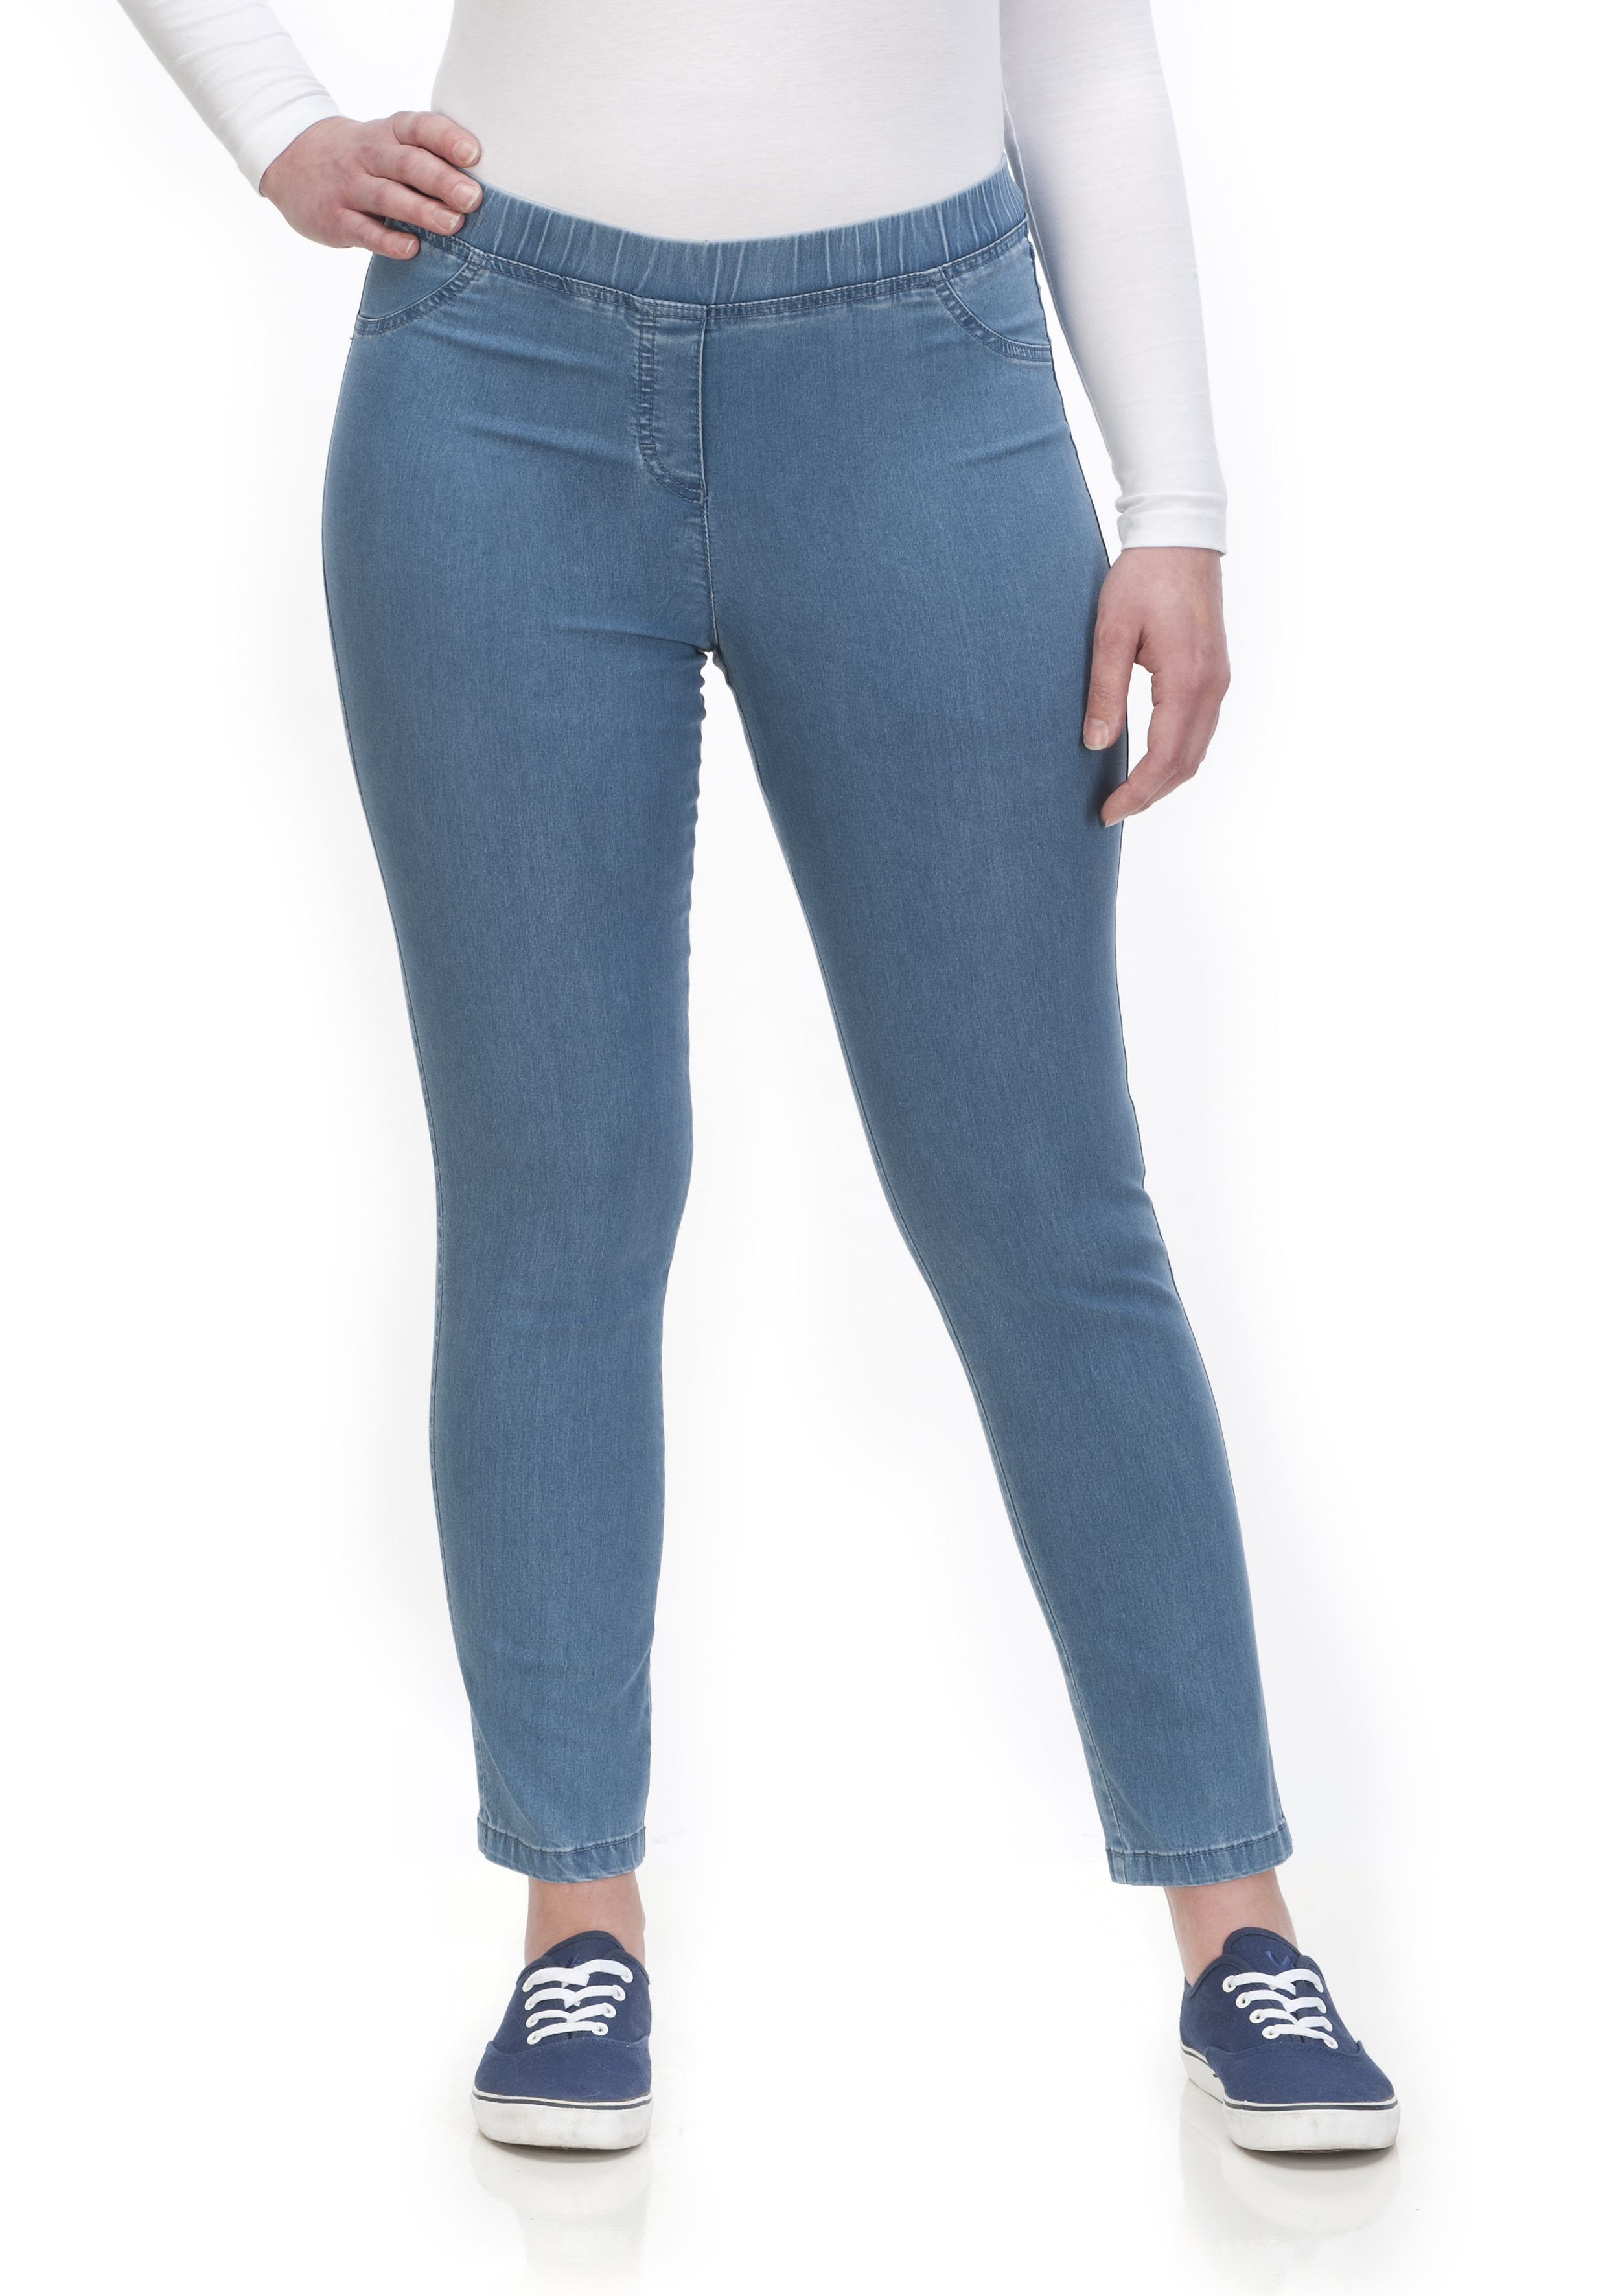 BiNA Jeggings Jeans - Superstretch KjBRAND Curvy by JENNY